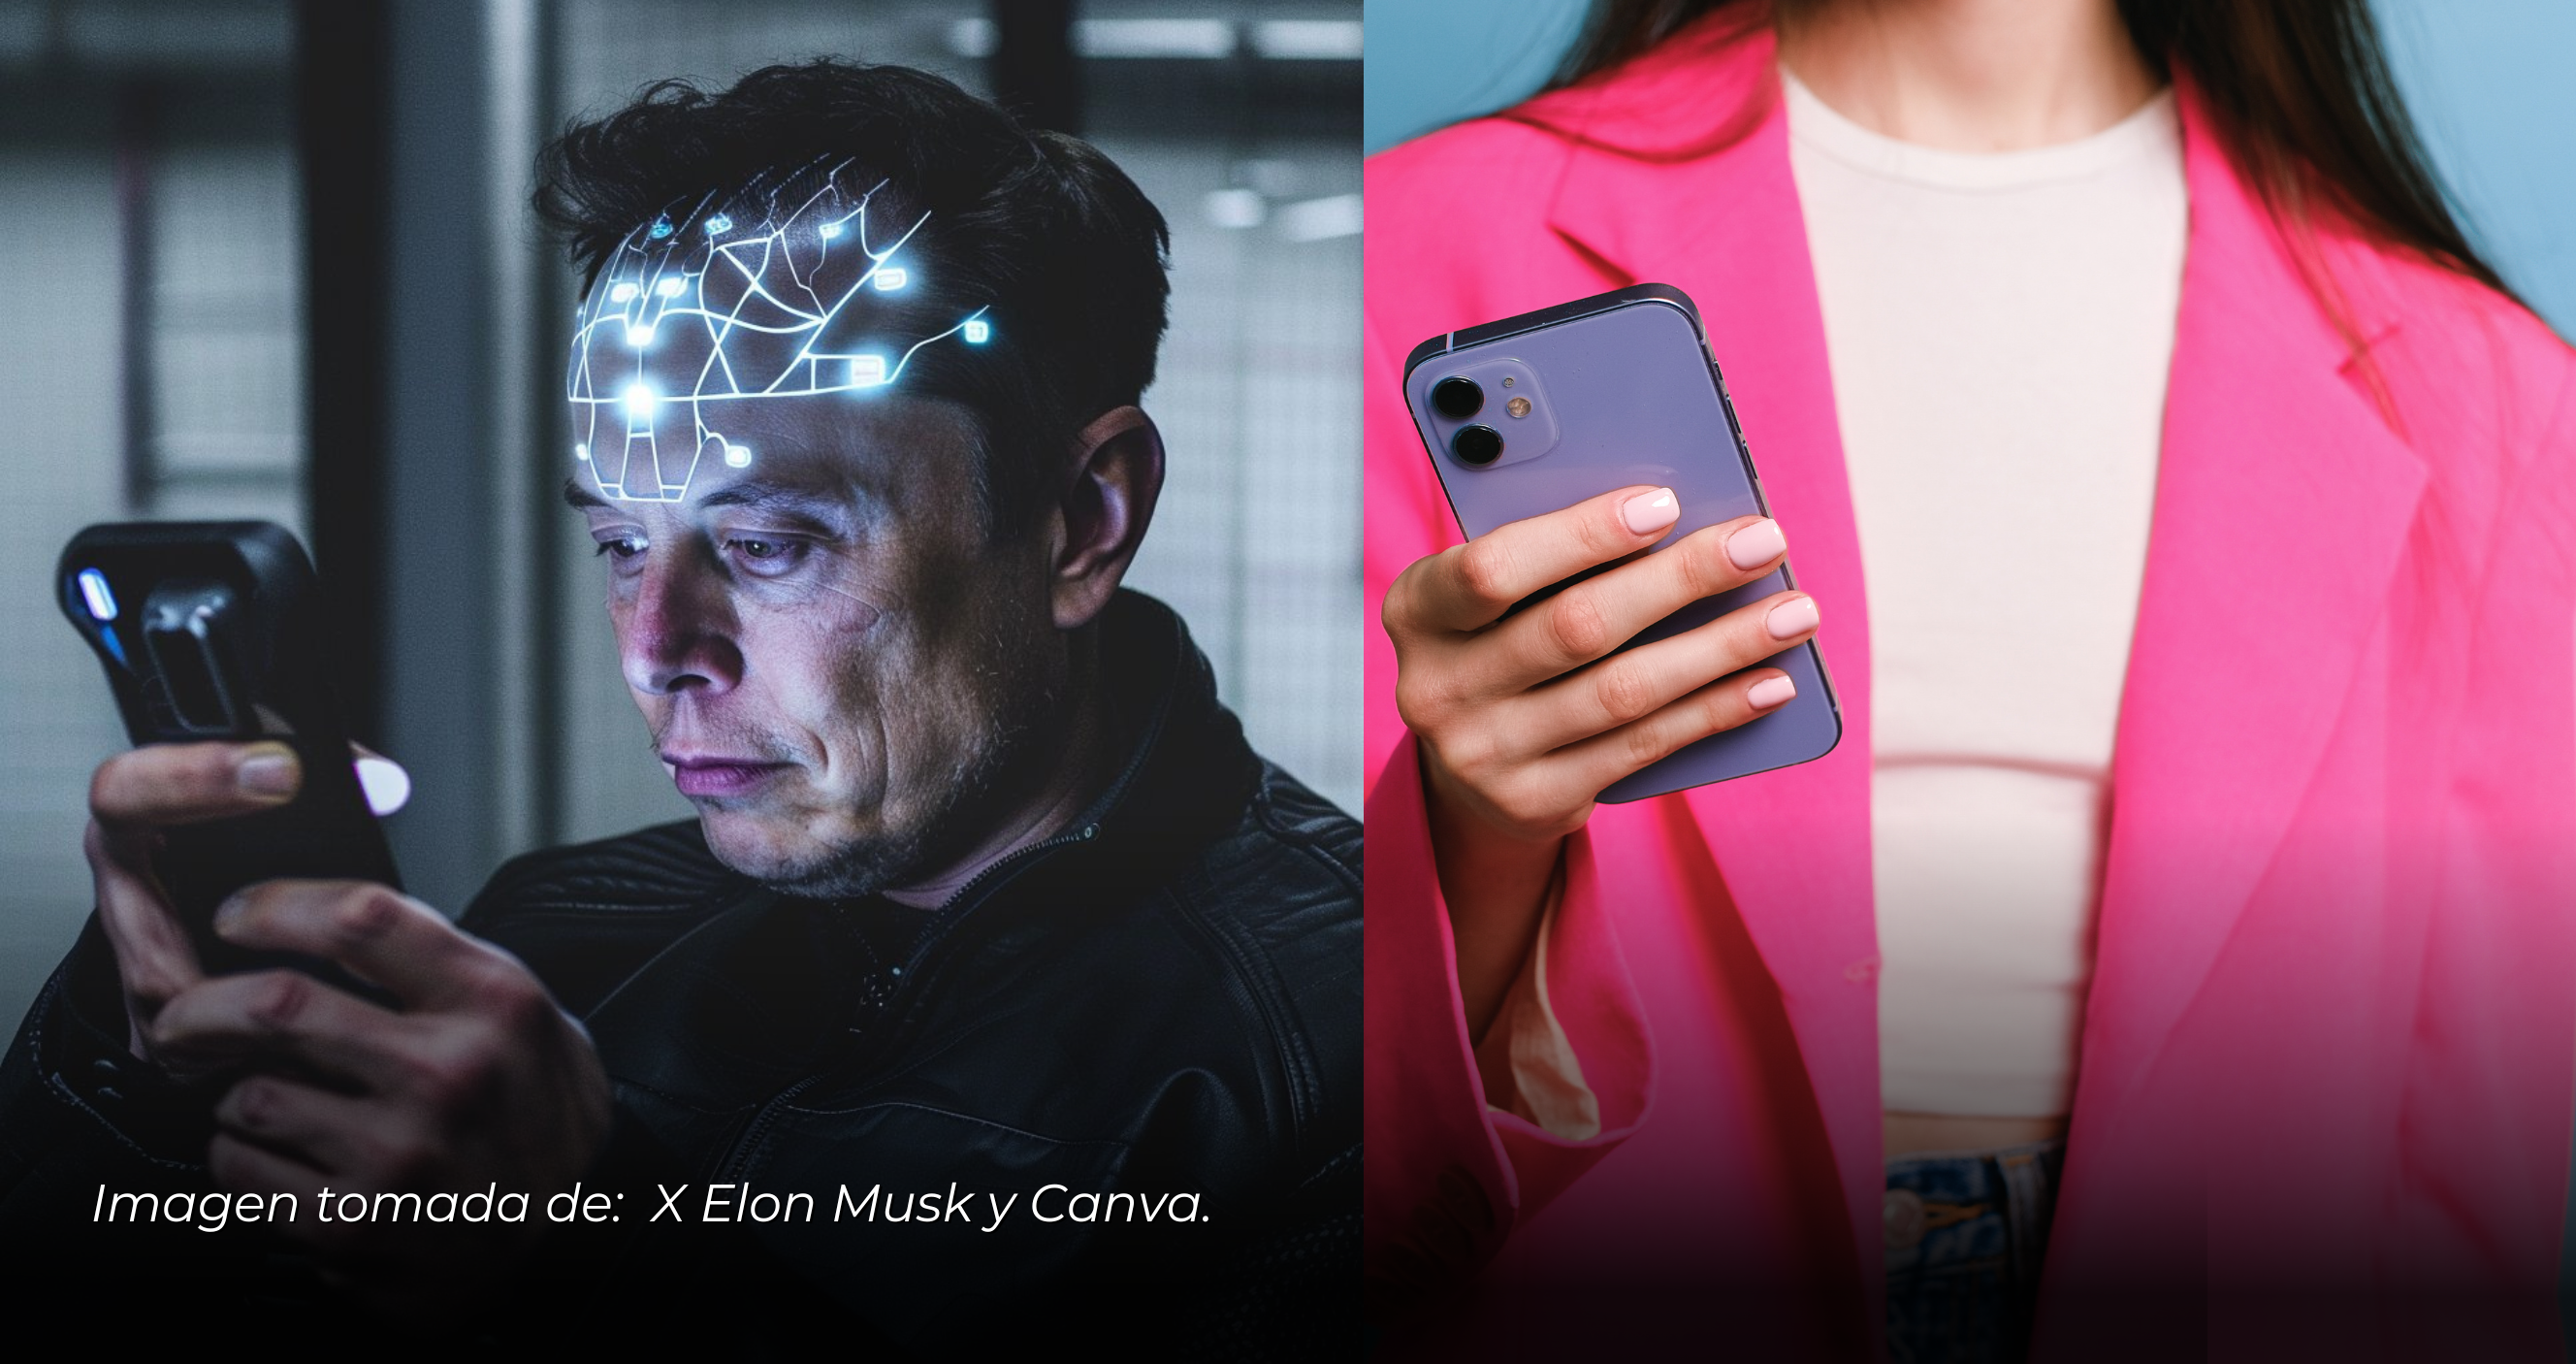 Elon Musk predice el fin de los teléfonos móviles en favor de implantes cerebrales Neuralink.